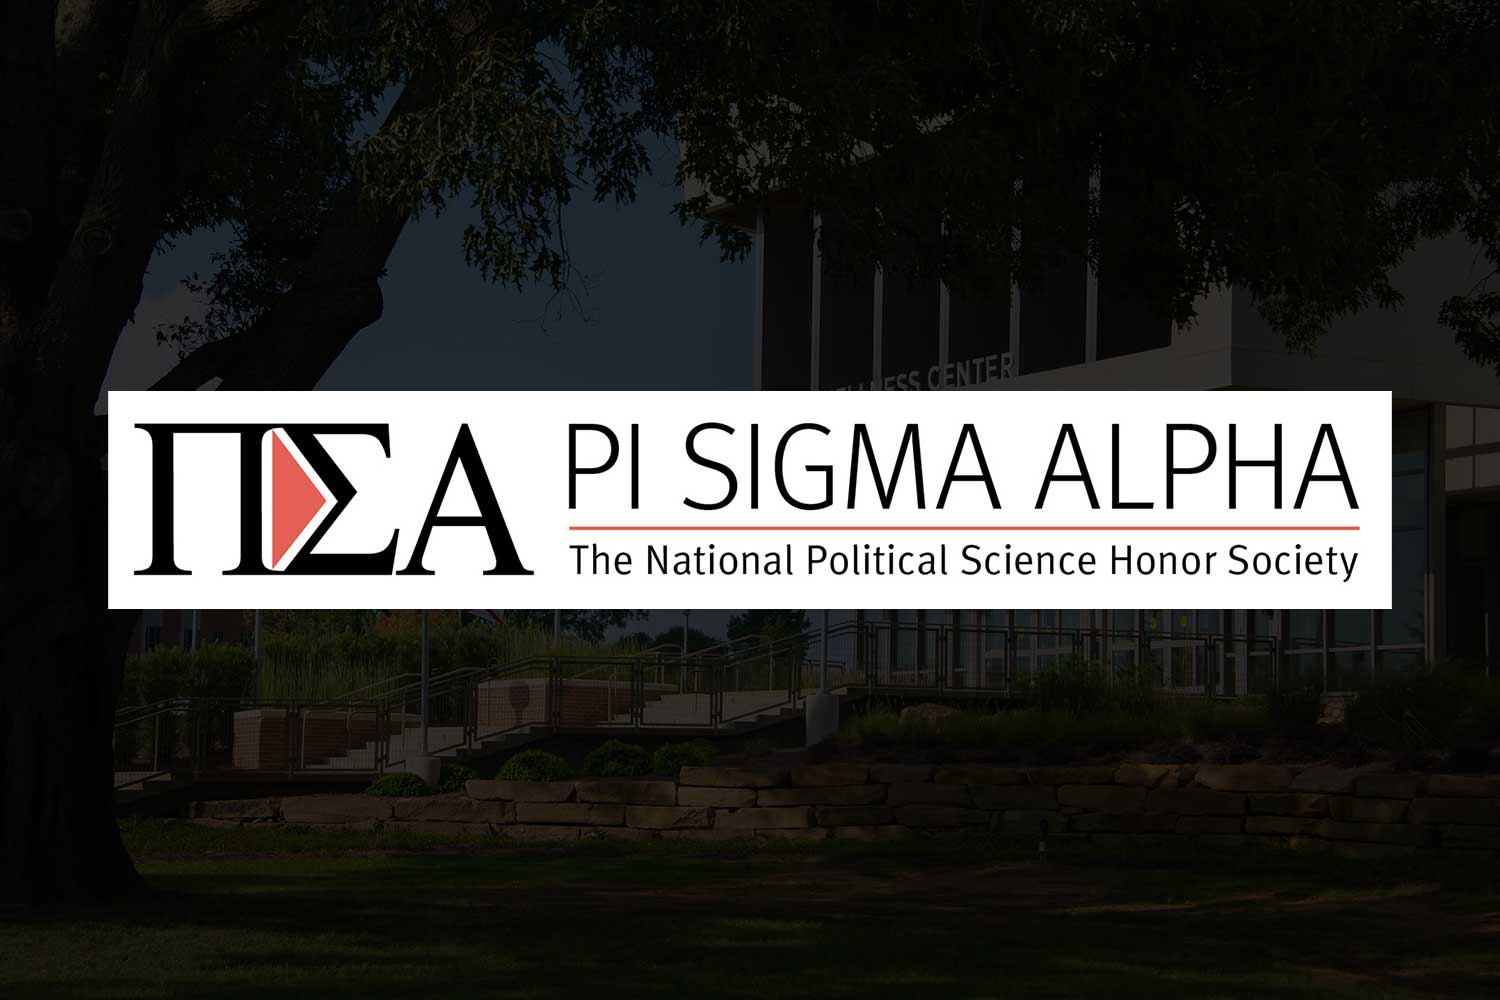 Pi Sigma Alpha logo